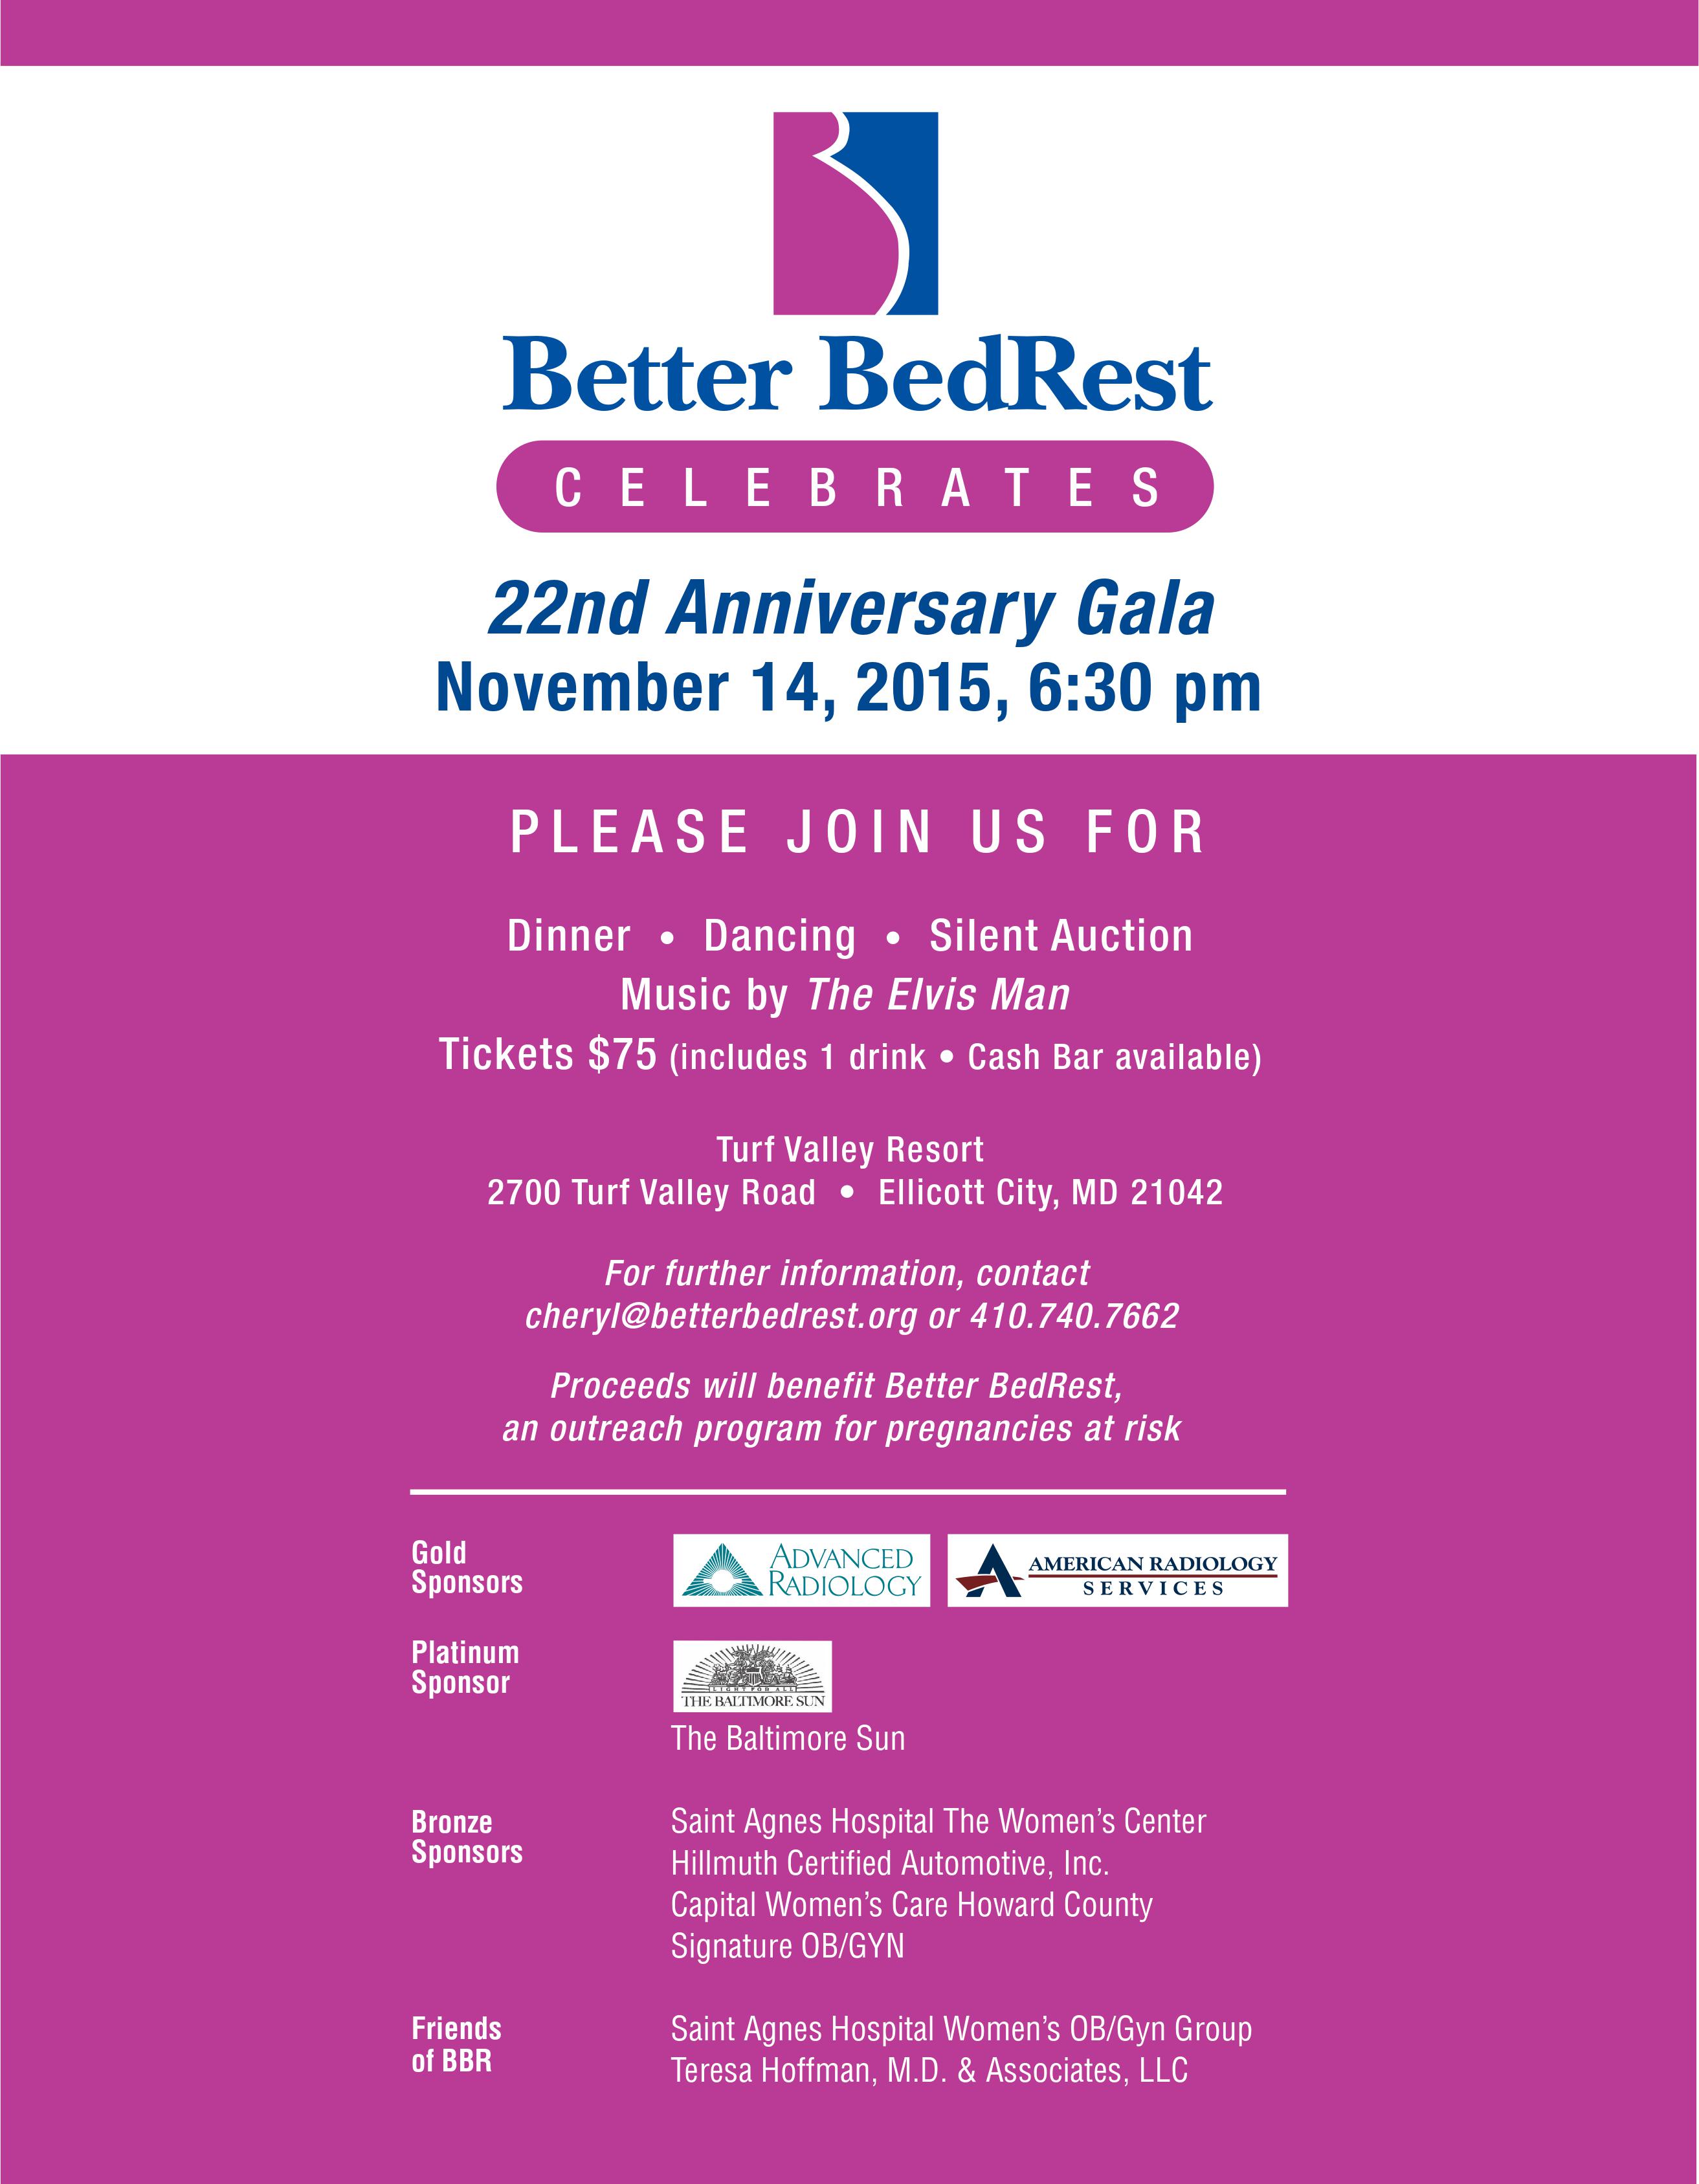 Better BedRest Gala